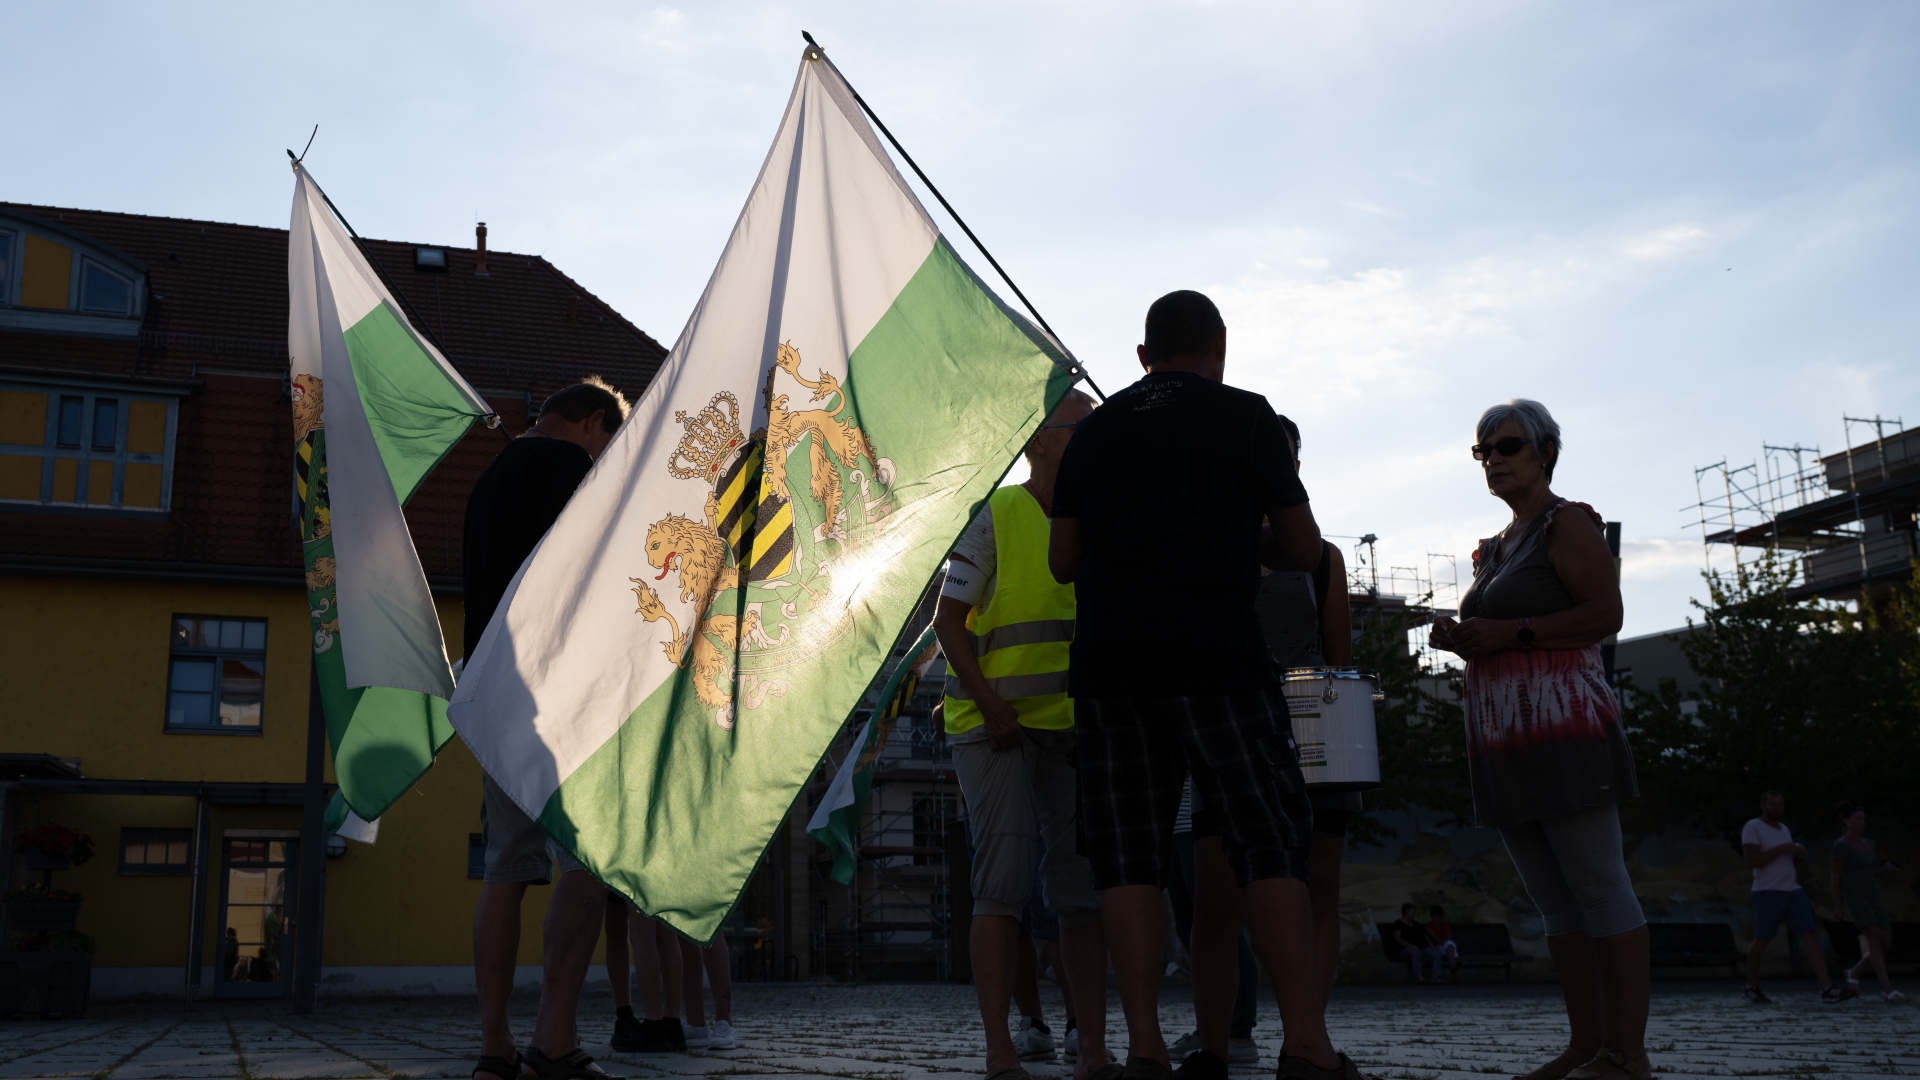  Sachsen, Heidenau: Teilnehmer einer Kundgebung der rechtsextremen Kleinstpartei "Freie Sachsen" | dpa